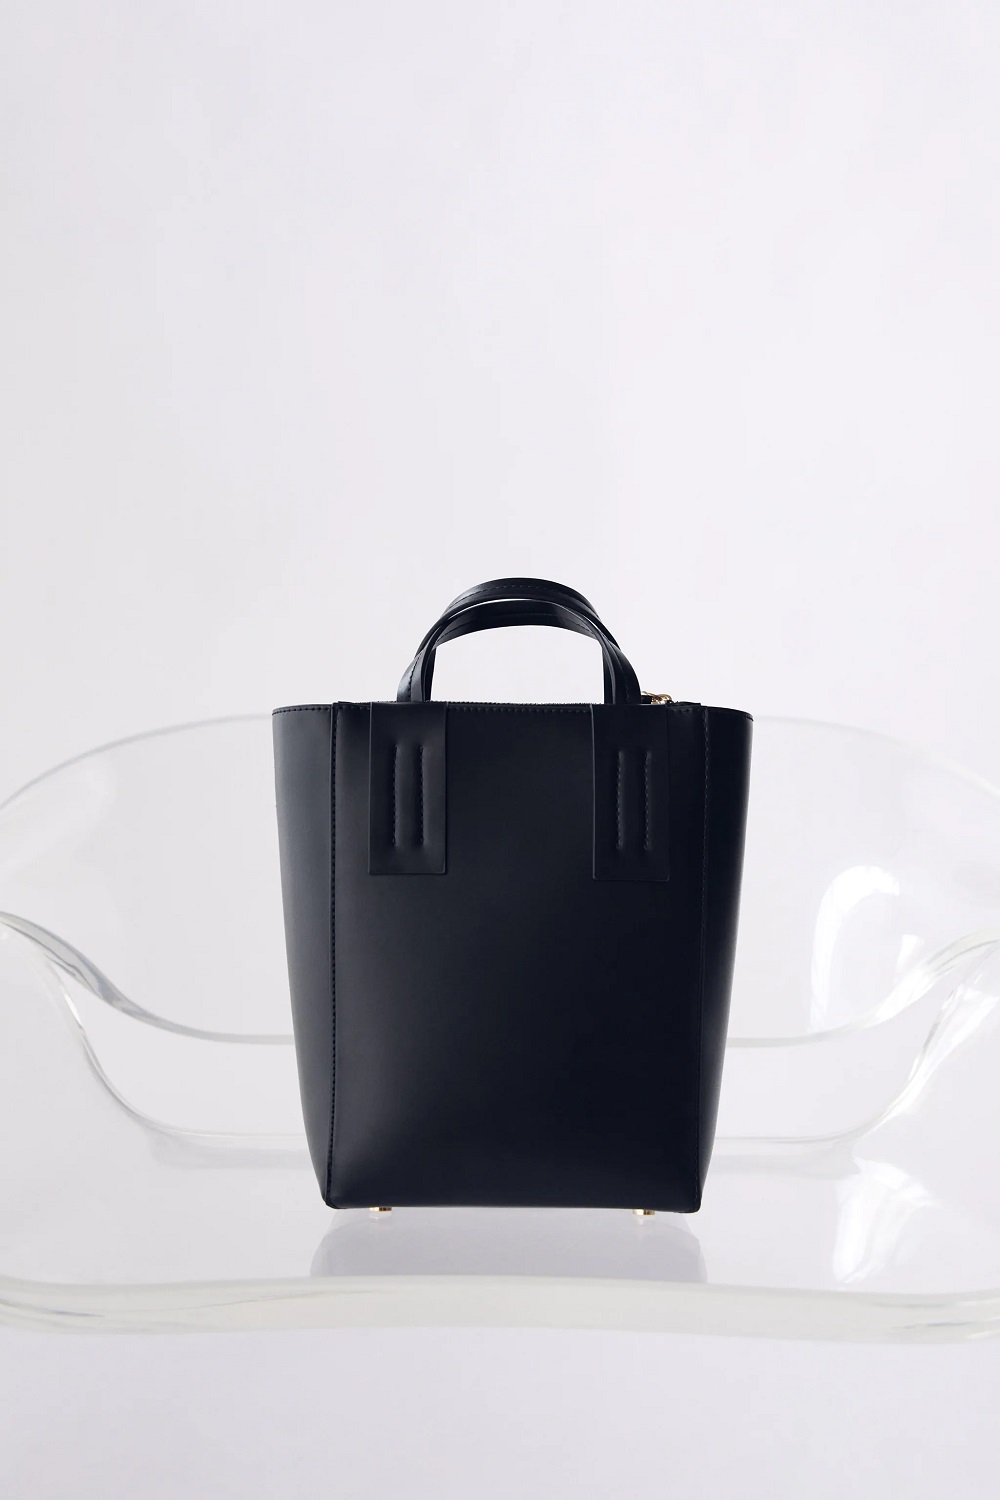 7 savršenih Zara crna tote torba 2021.